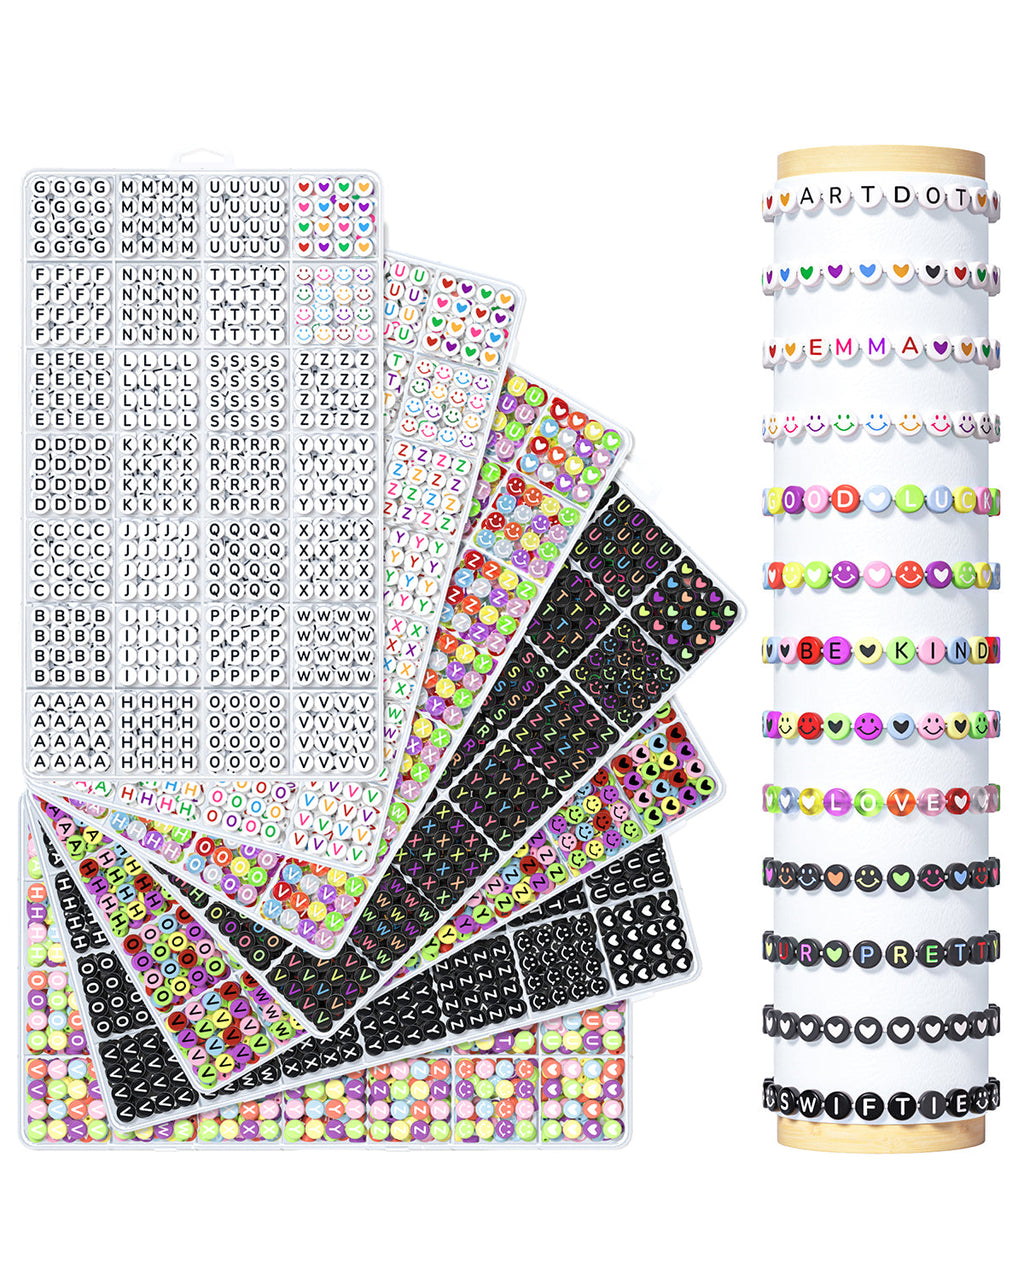 https://www.artdot.com/cdn/shop/files/9800-PCS-7-Cases-Letter-beads-For-Friendship-Bracelets-Kits-ARTDOT-145696176.jpg?v=1705038005&width=1024